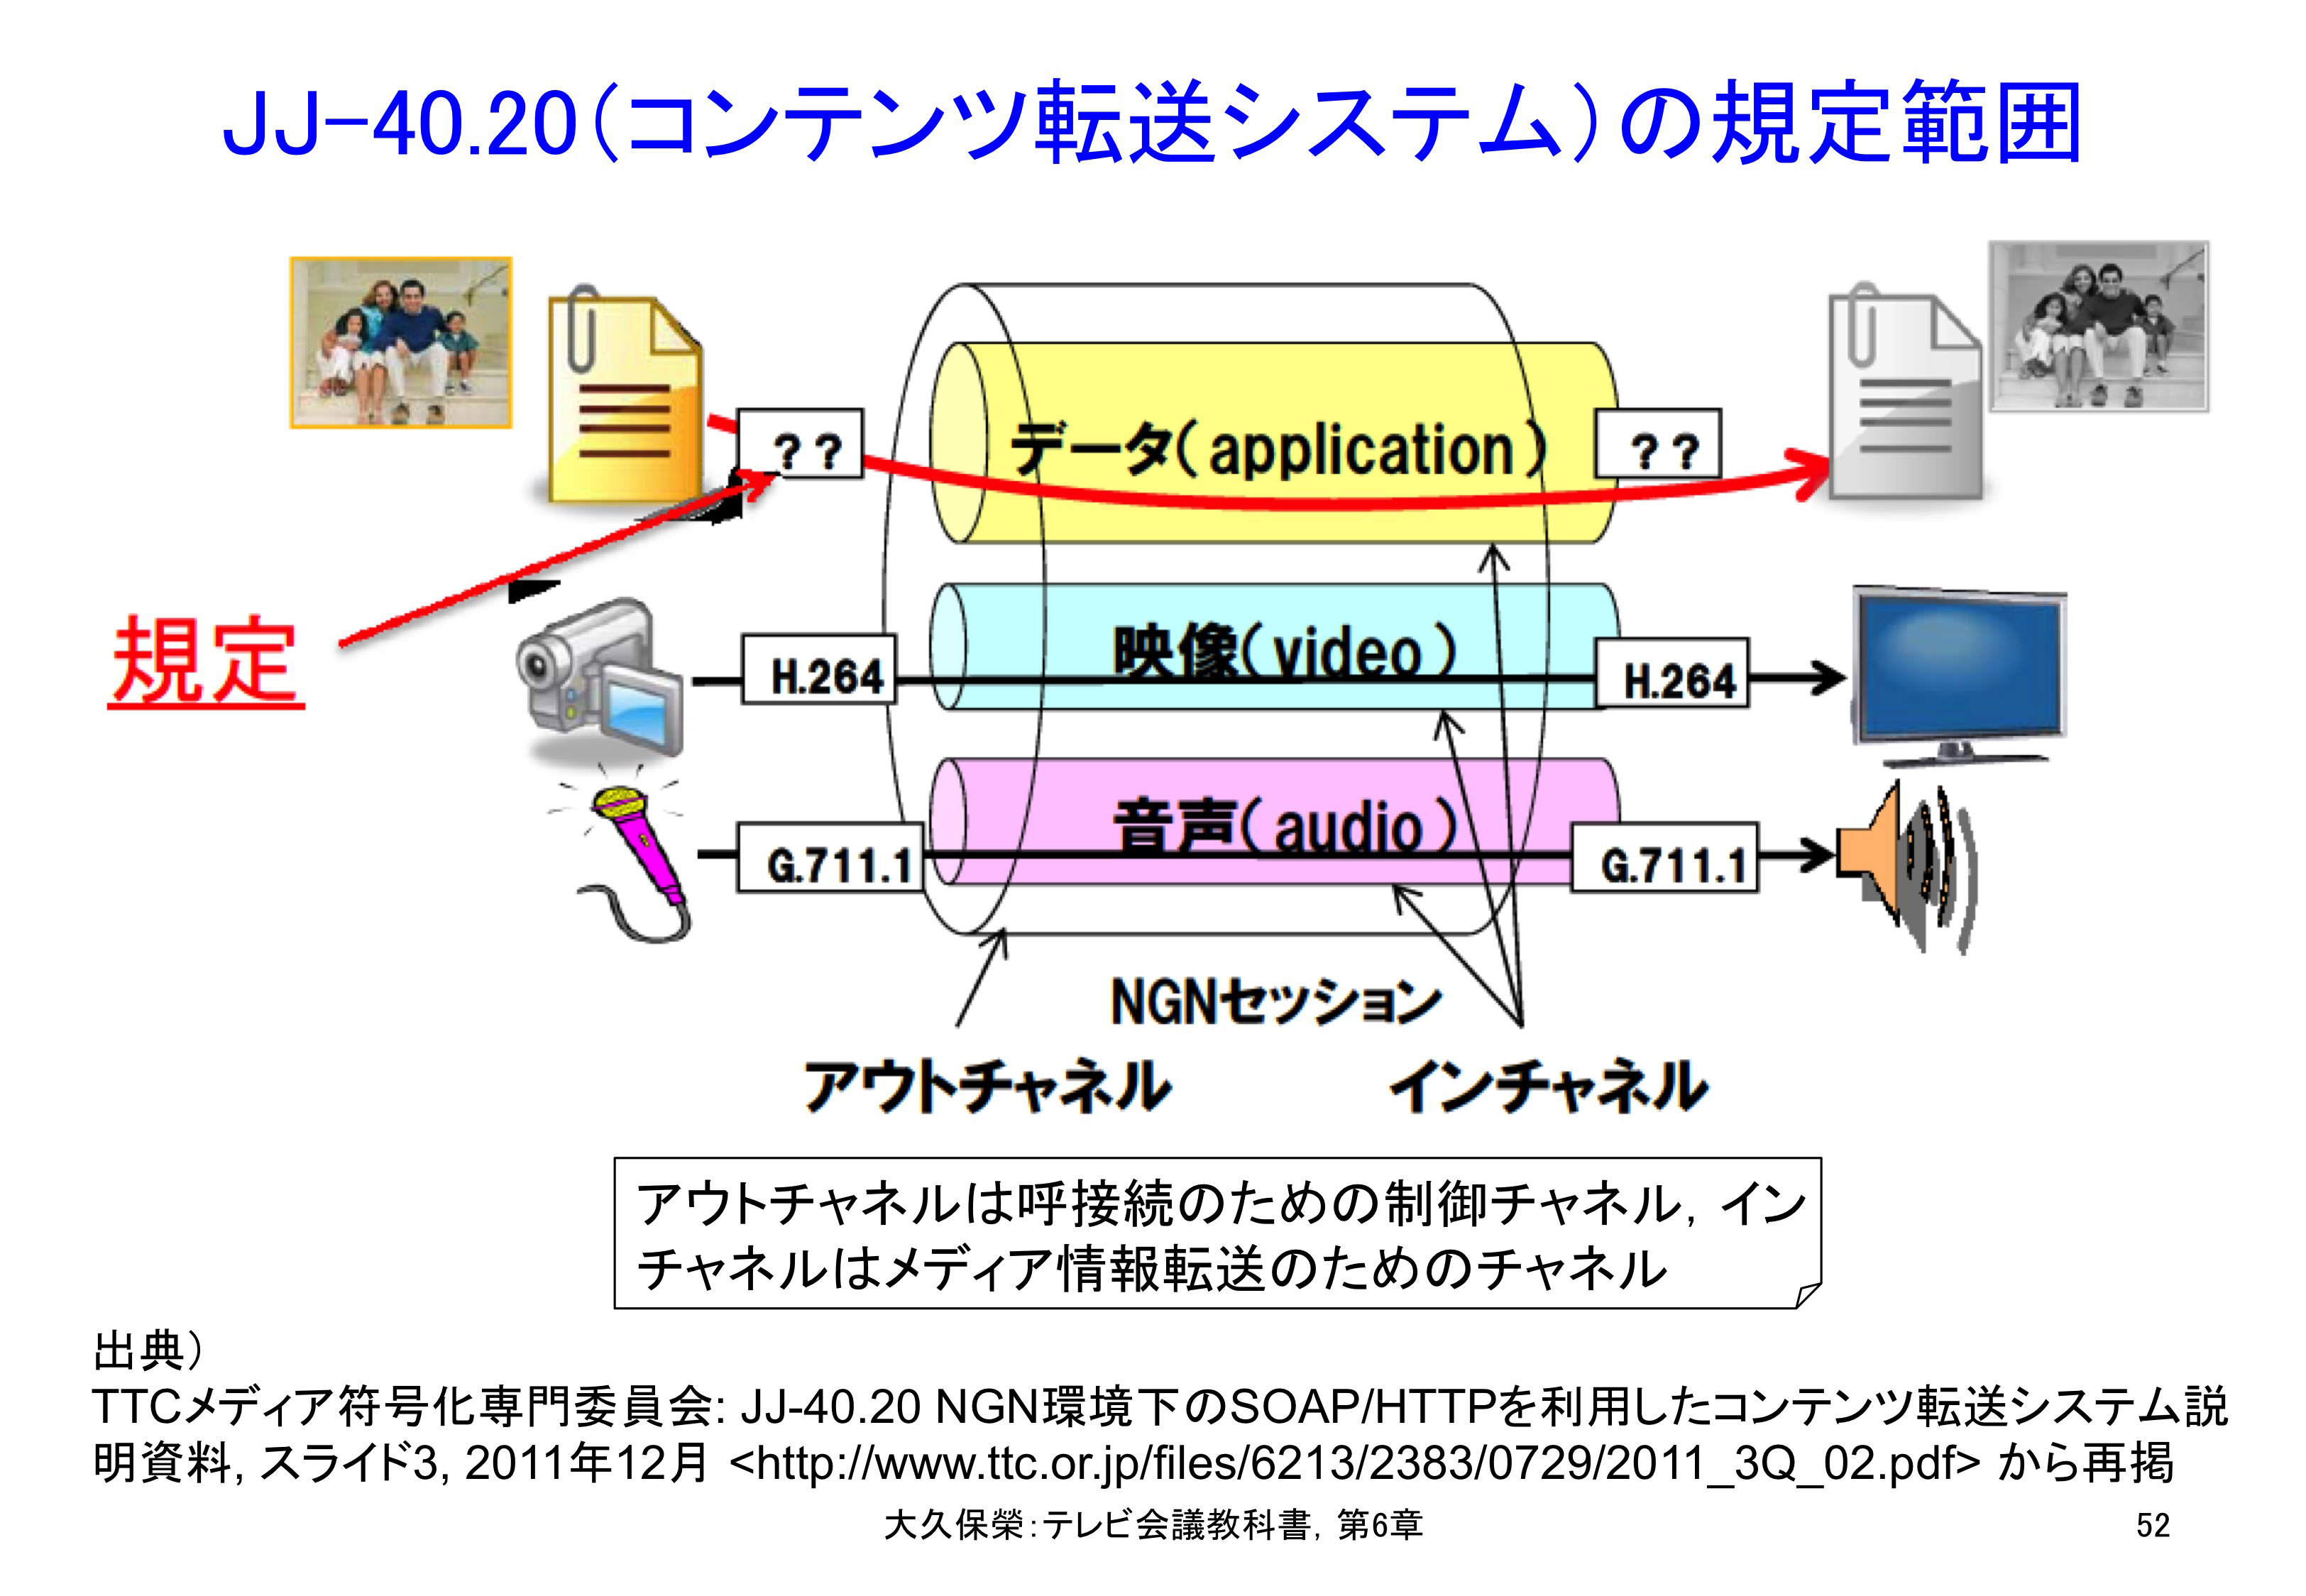 図6-52 JJ-40.20（コンテンツ転送システム）の規定範囲